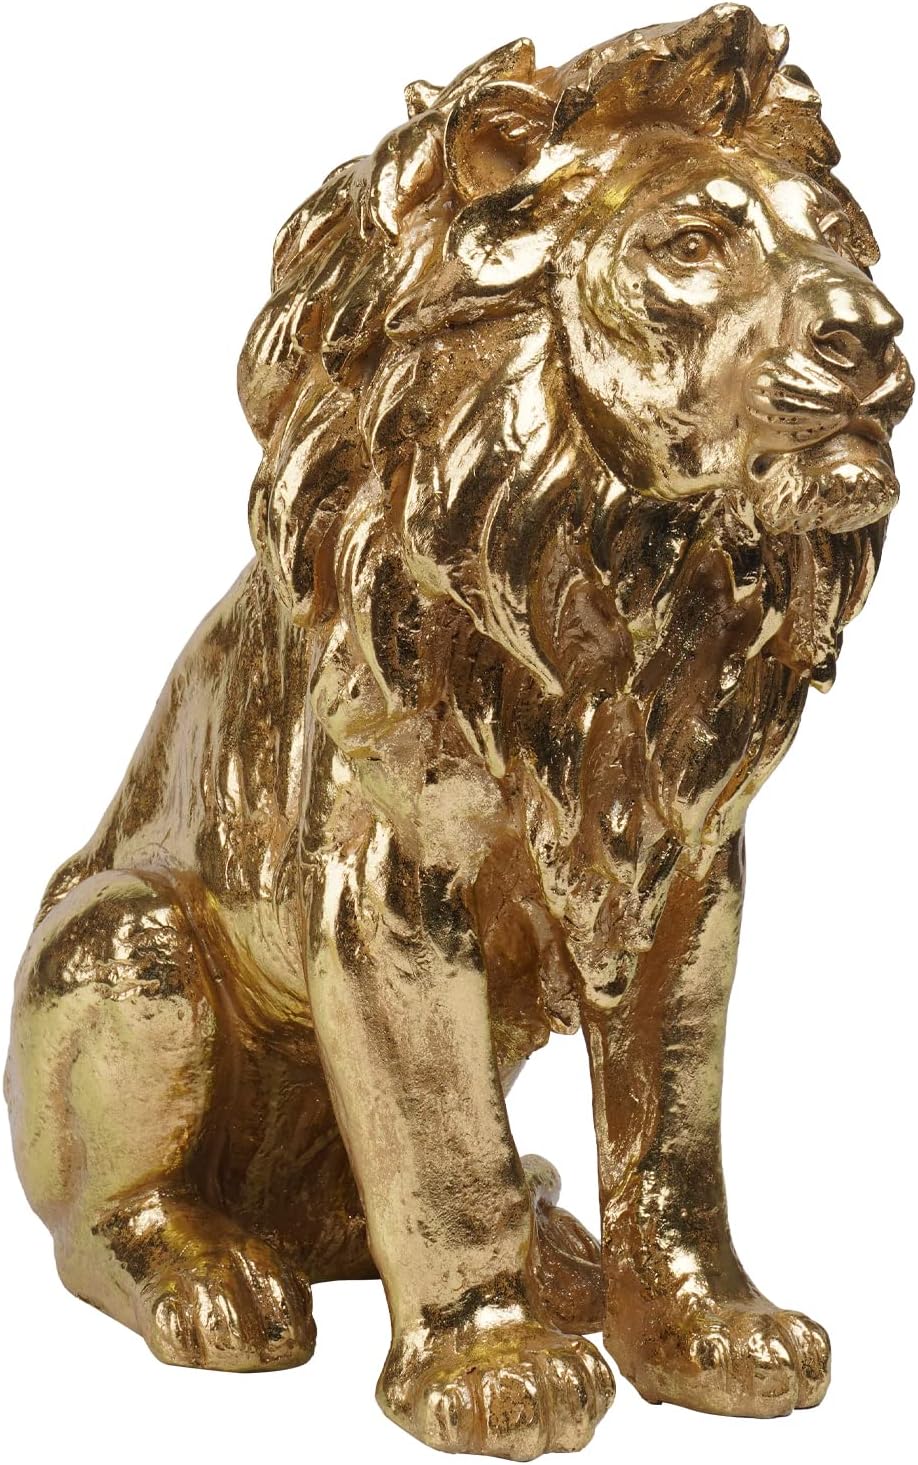 幸運 祝福 金色のライオン彫像コレクター向けフィギュア約50cmゴールドホームデコレーション大型ライオン彫刻アート工芸贈り物輸入品